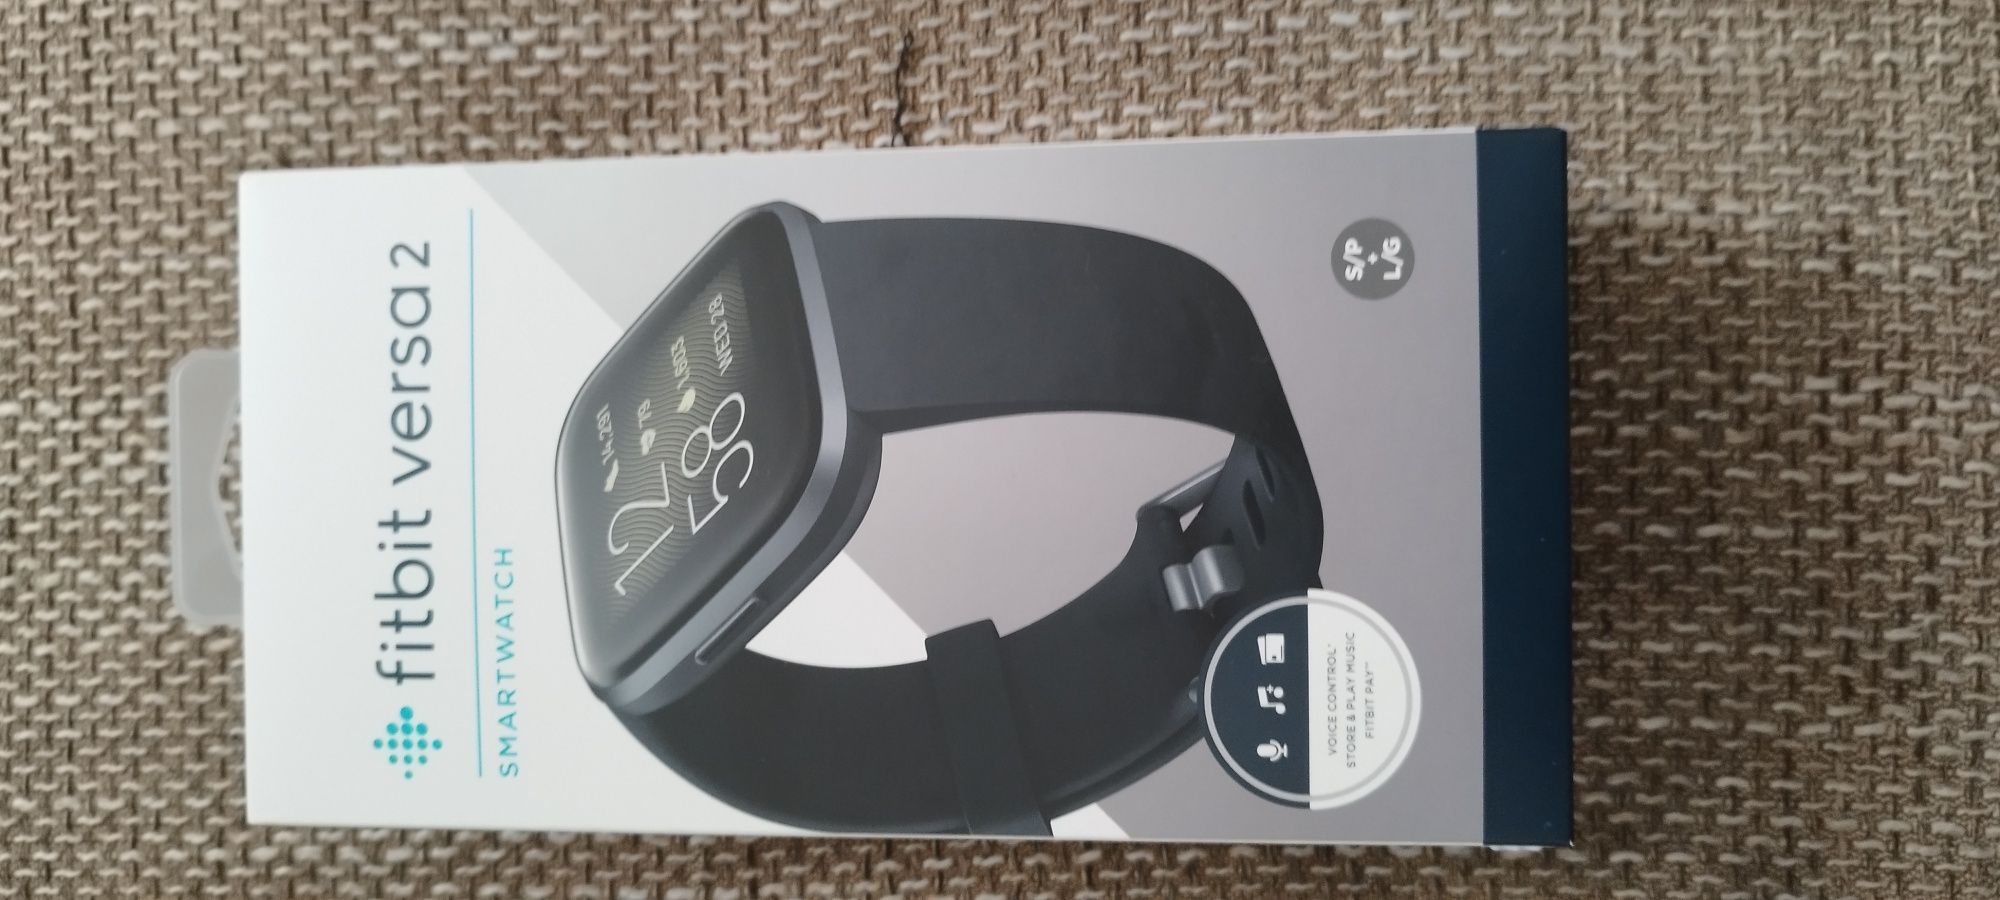 Smartwatch Fitbit versa 2.